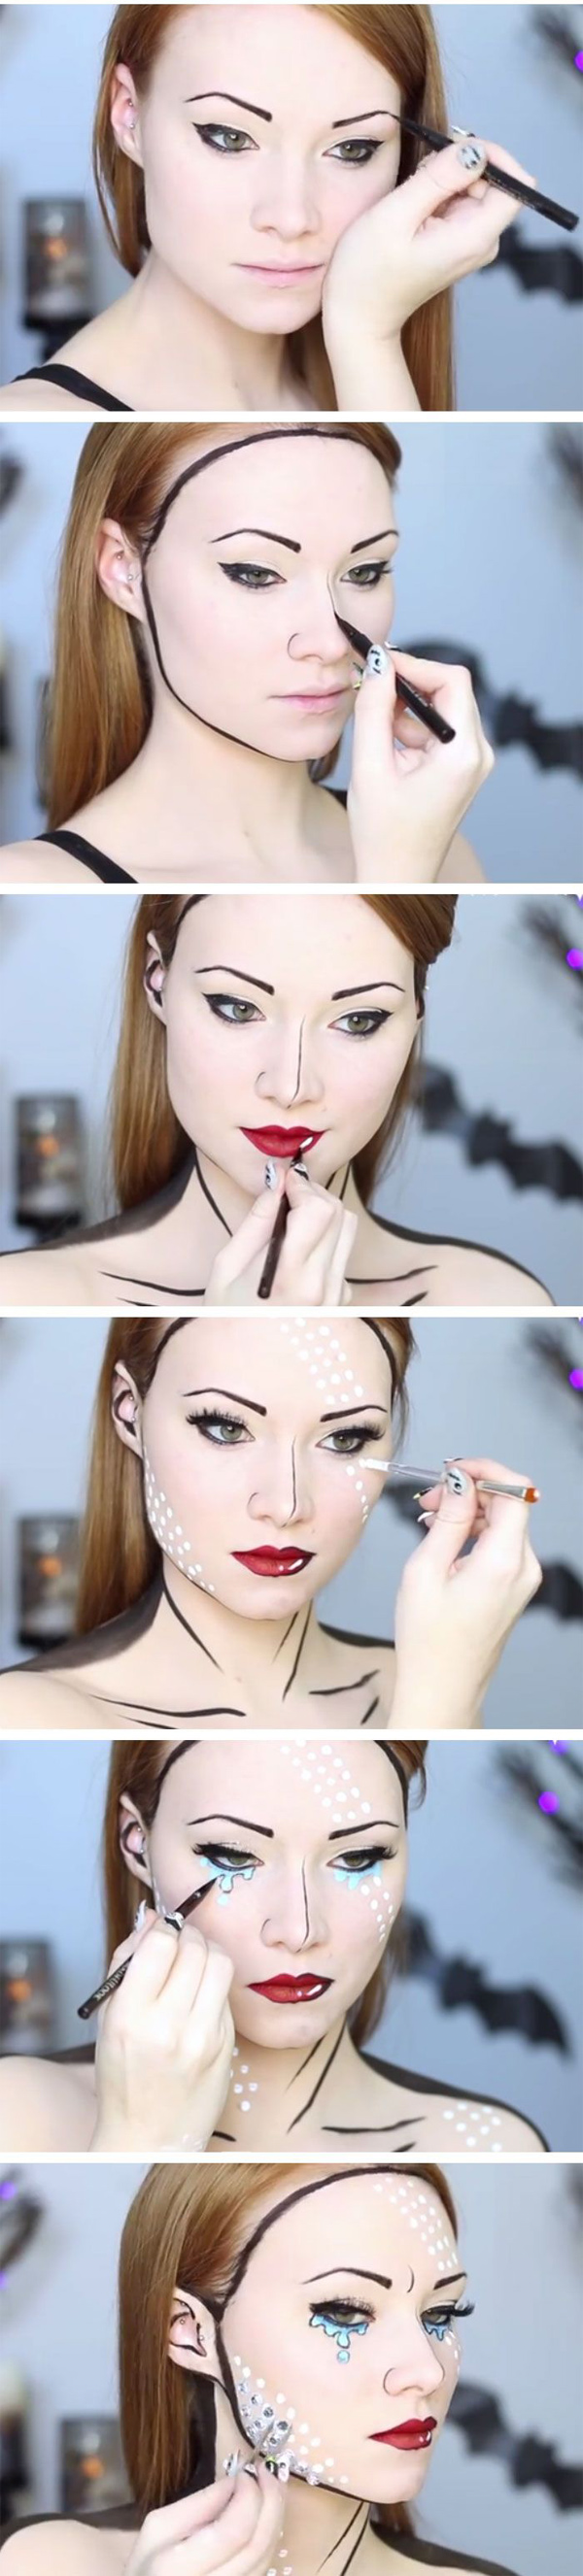 Як зробити макіяж на Хелловін своїми руками (фото і відео інструкції)